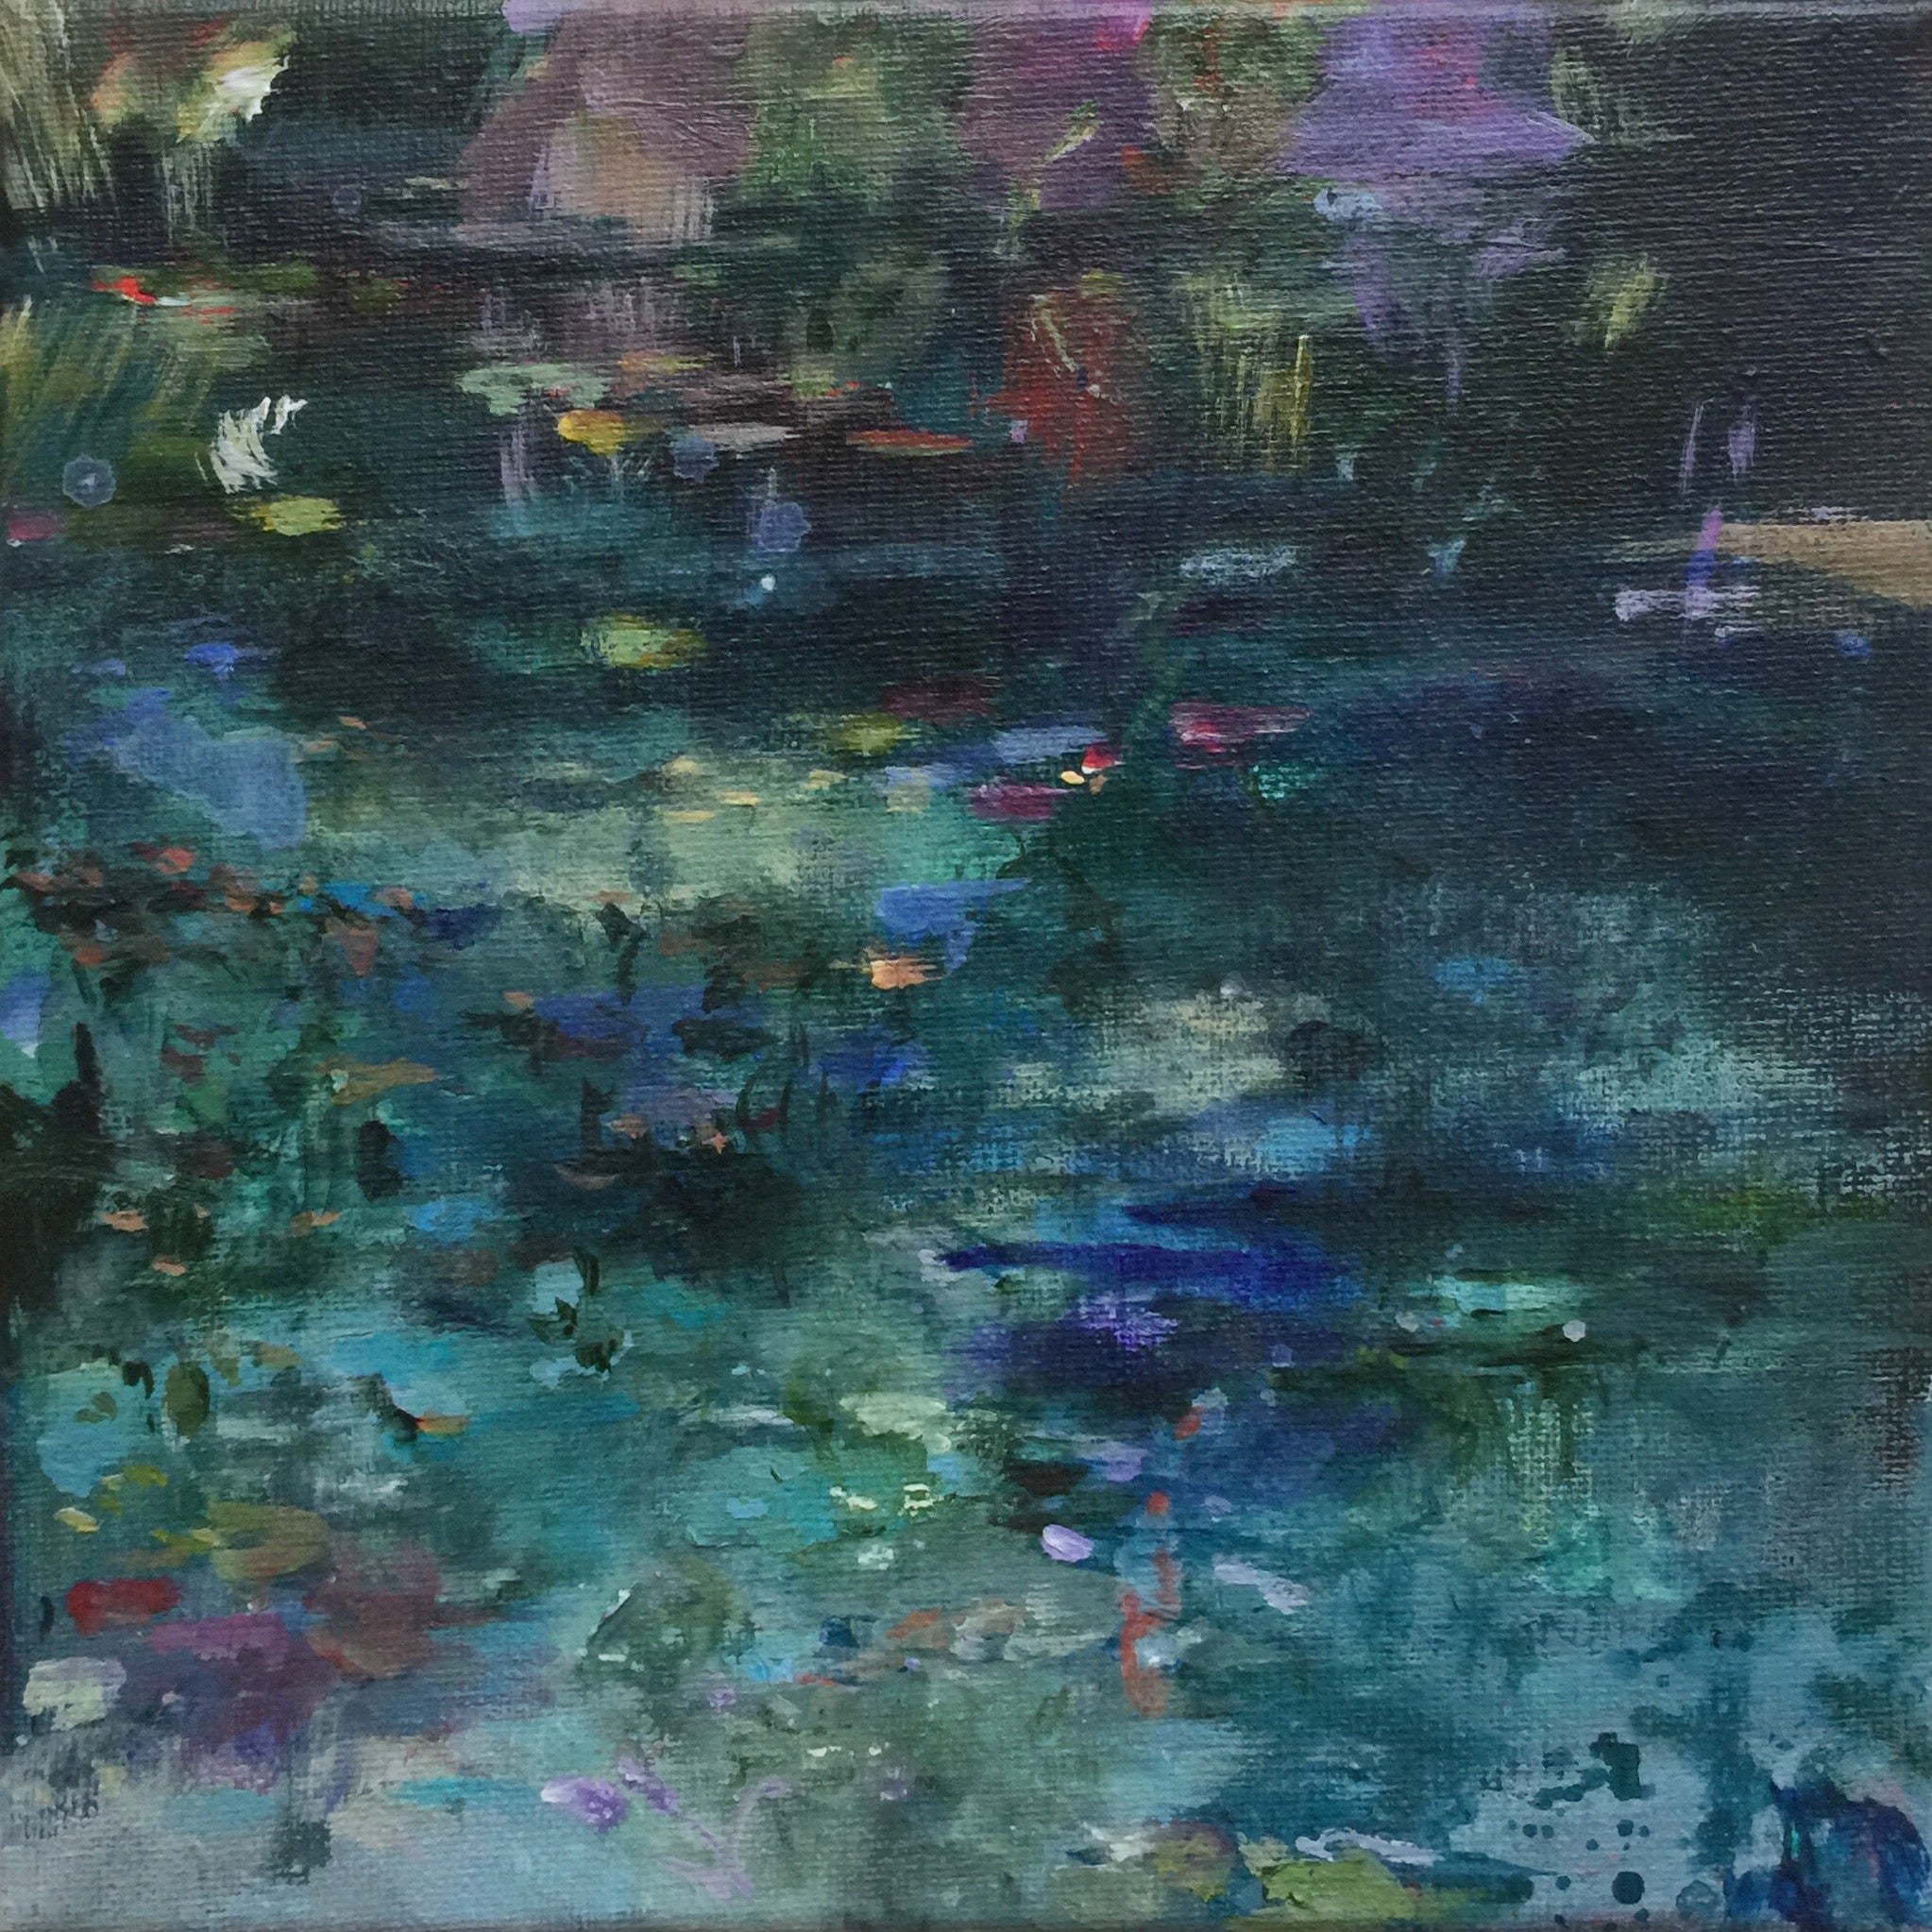 Dark Waters-Lies Goemans-waterscape-painting 20x20cm